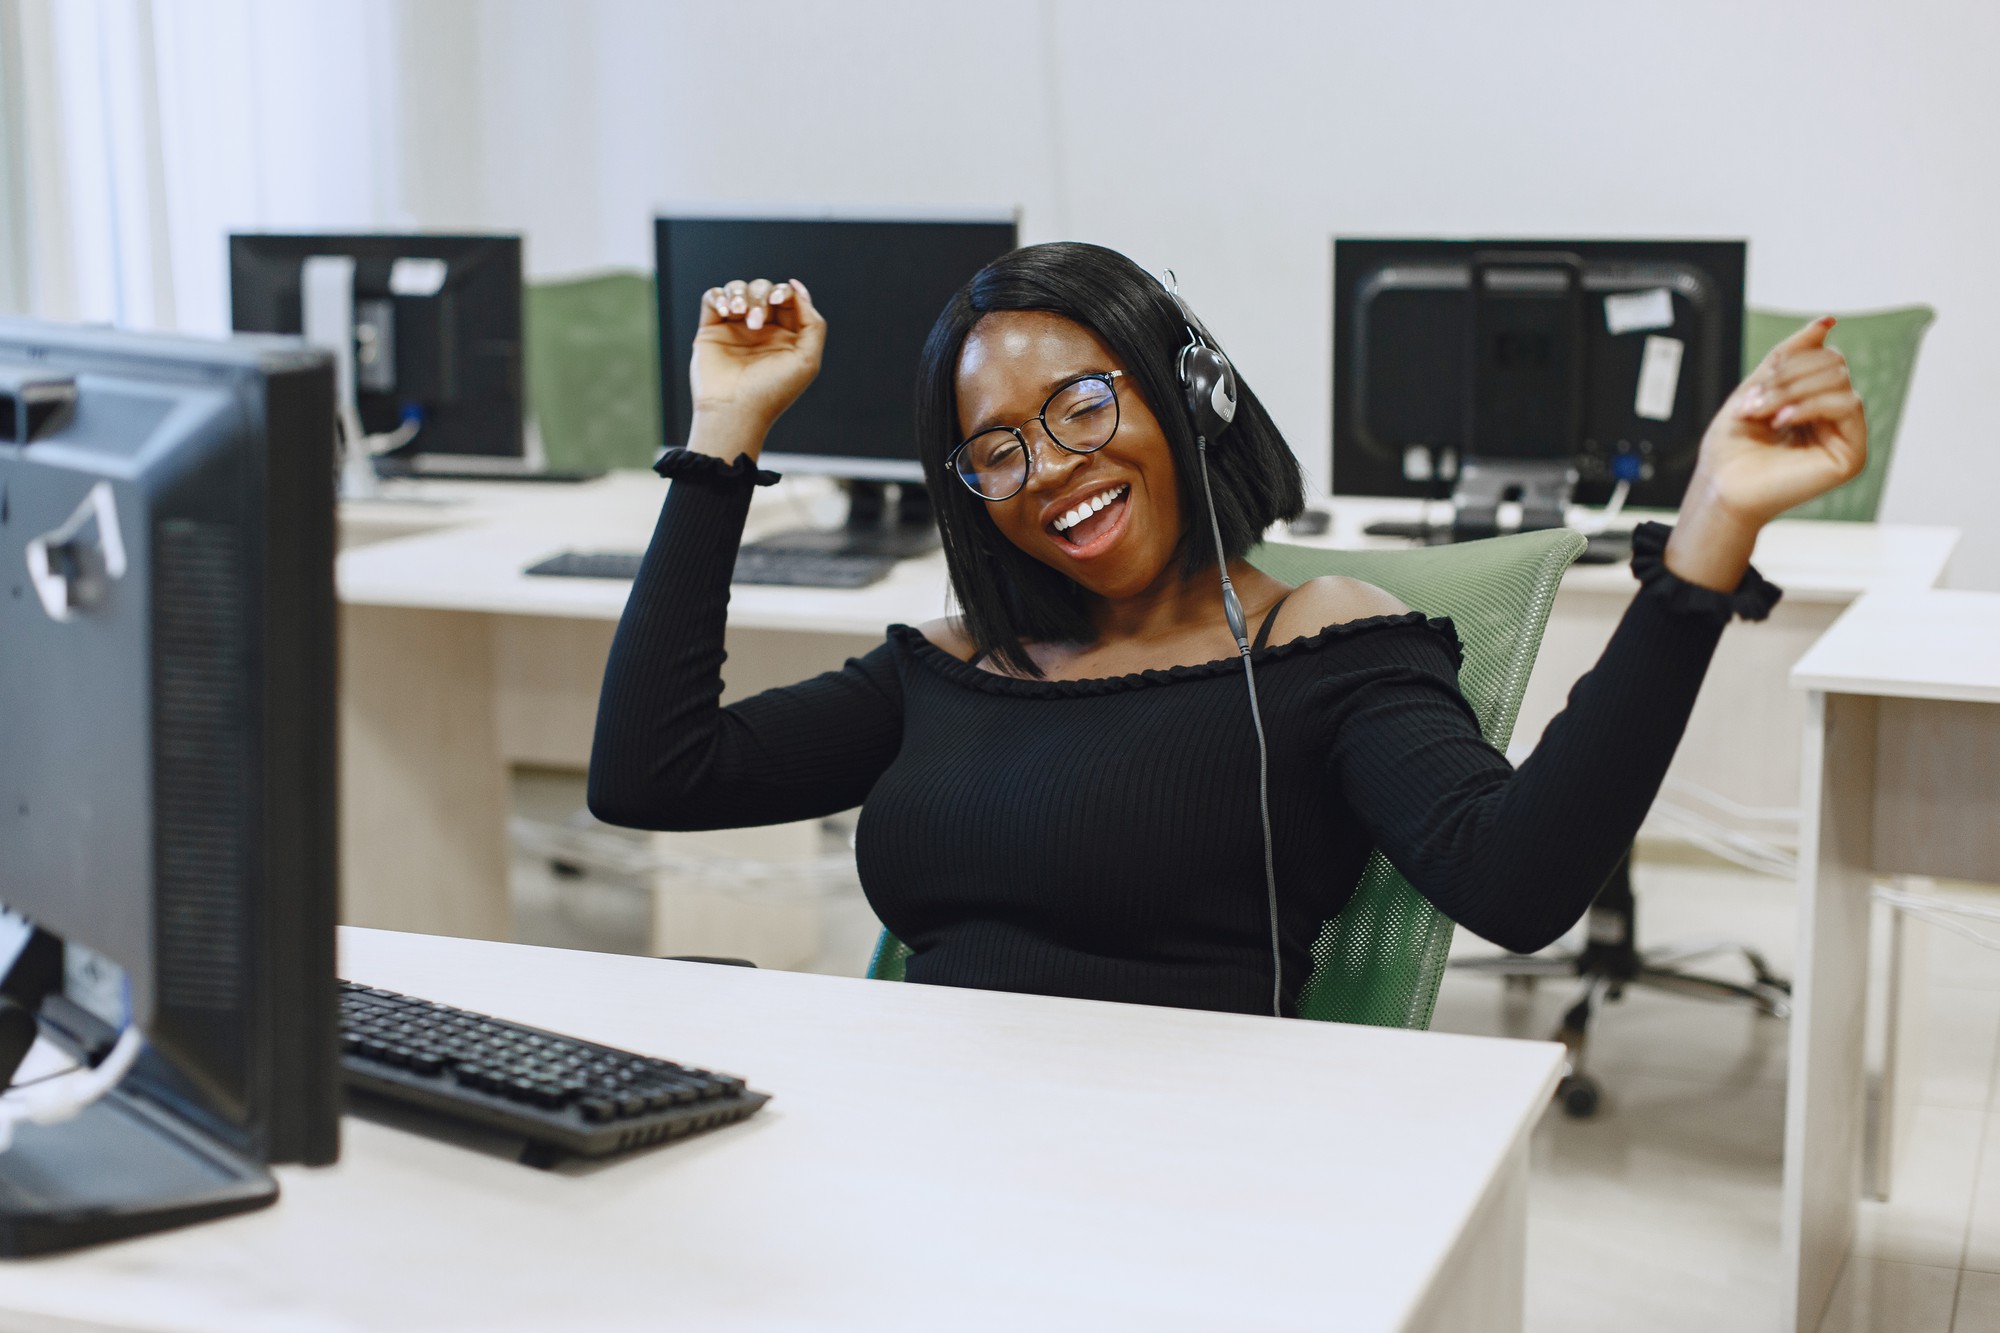 コンピュータサイエンスのクラスに座っているアフリカの女性。眼鏡をかけた女性。コンピューターの前に座っている女子学生。